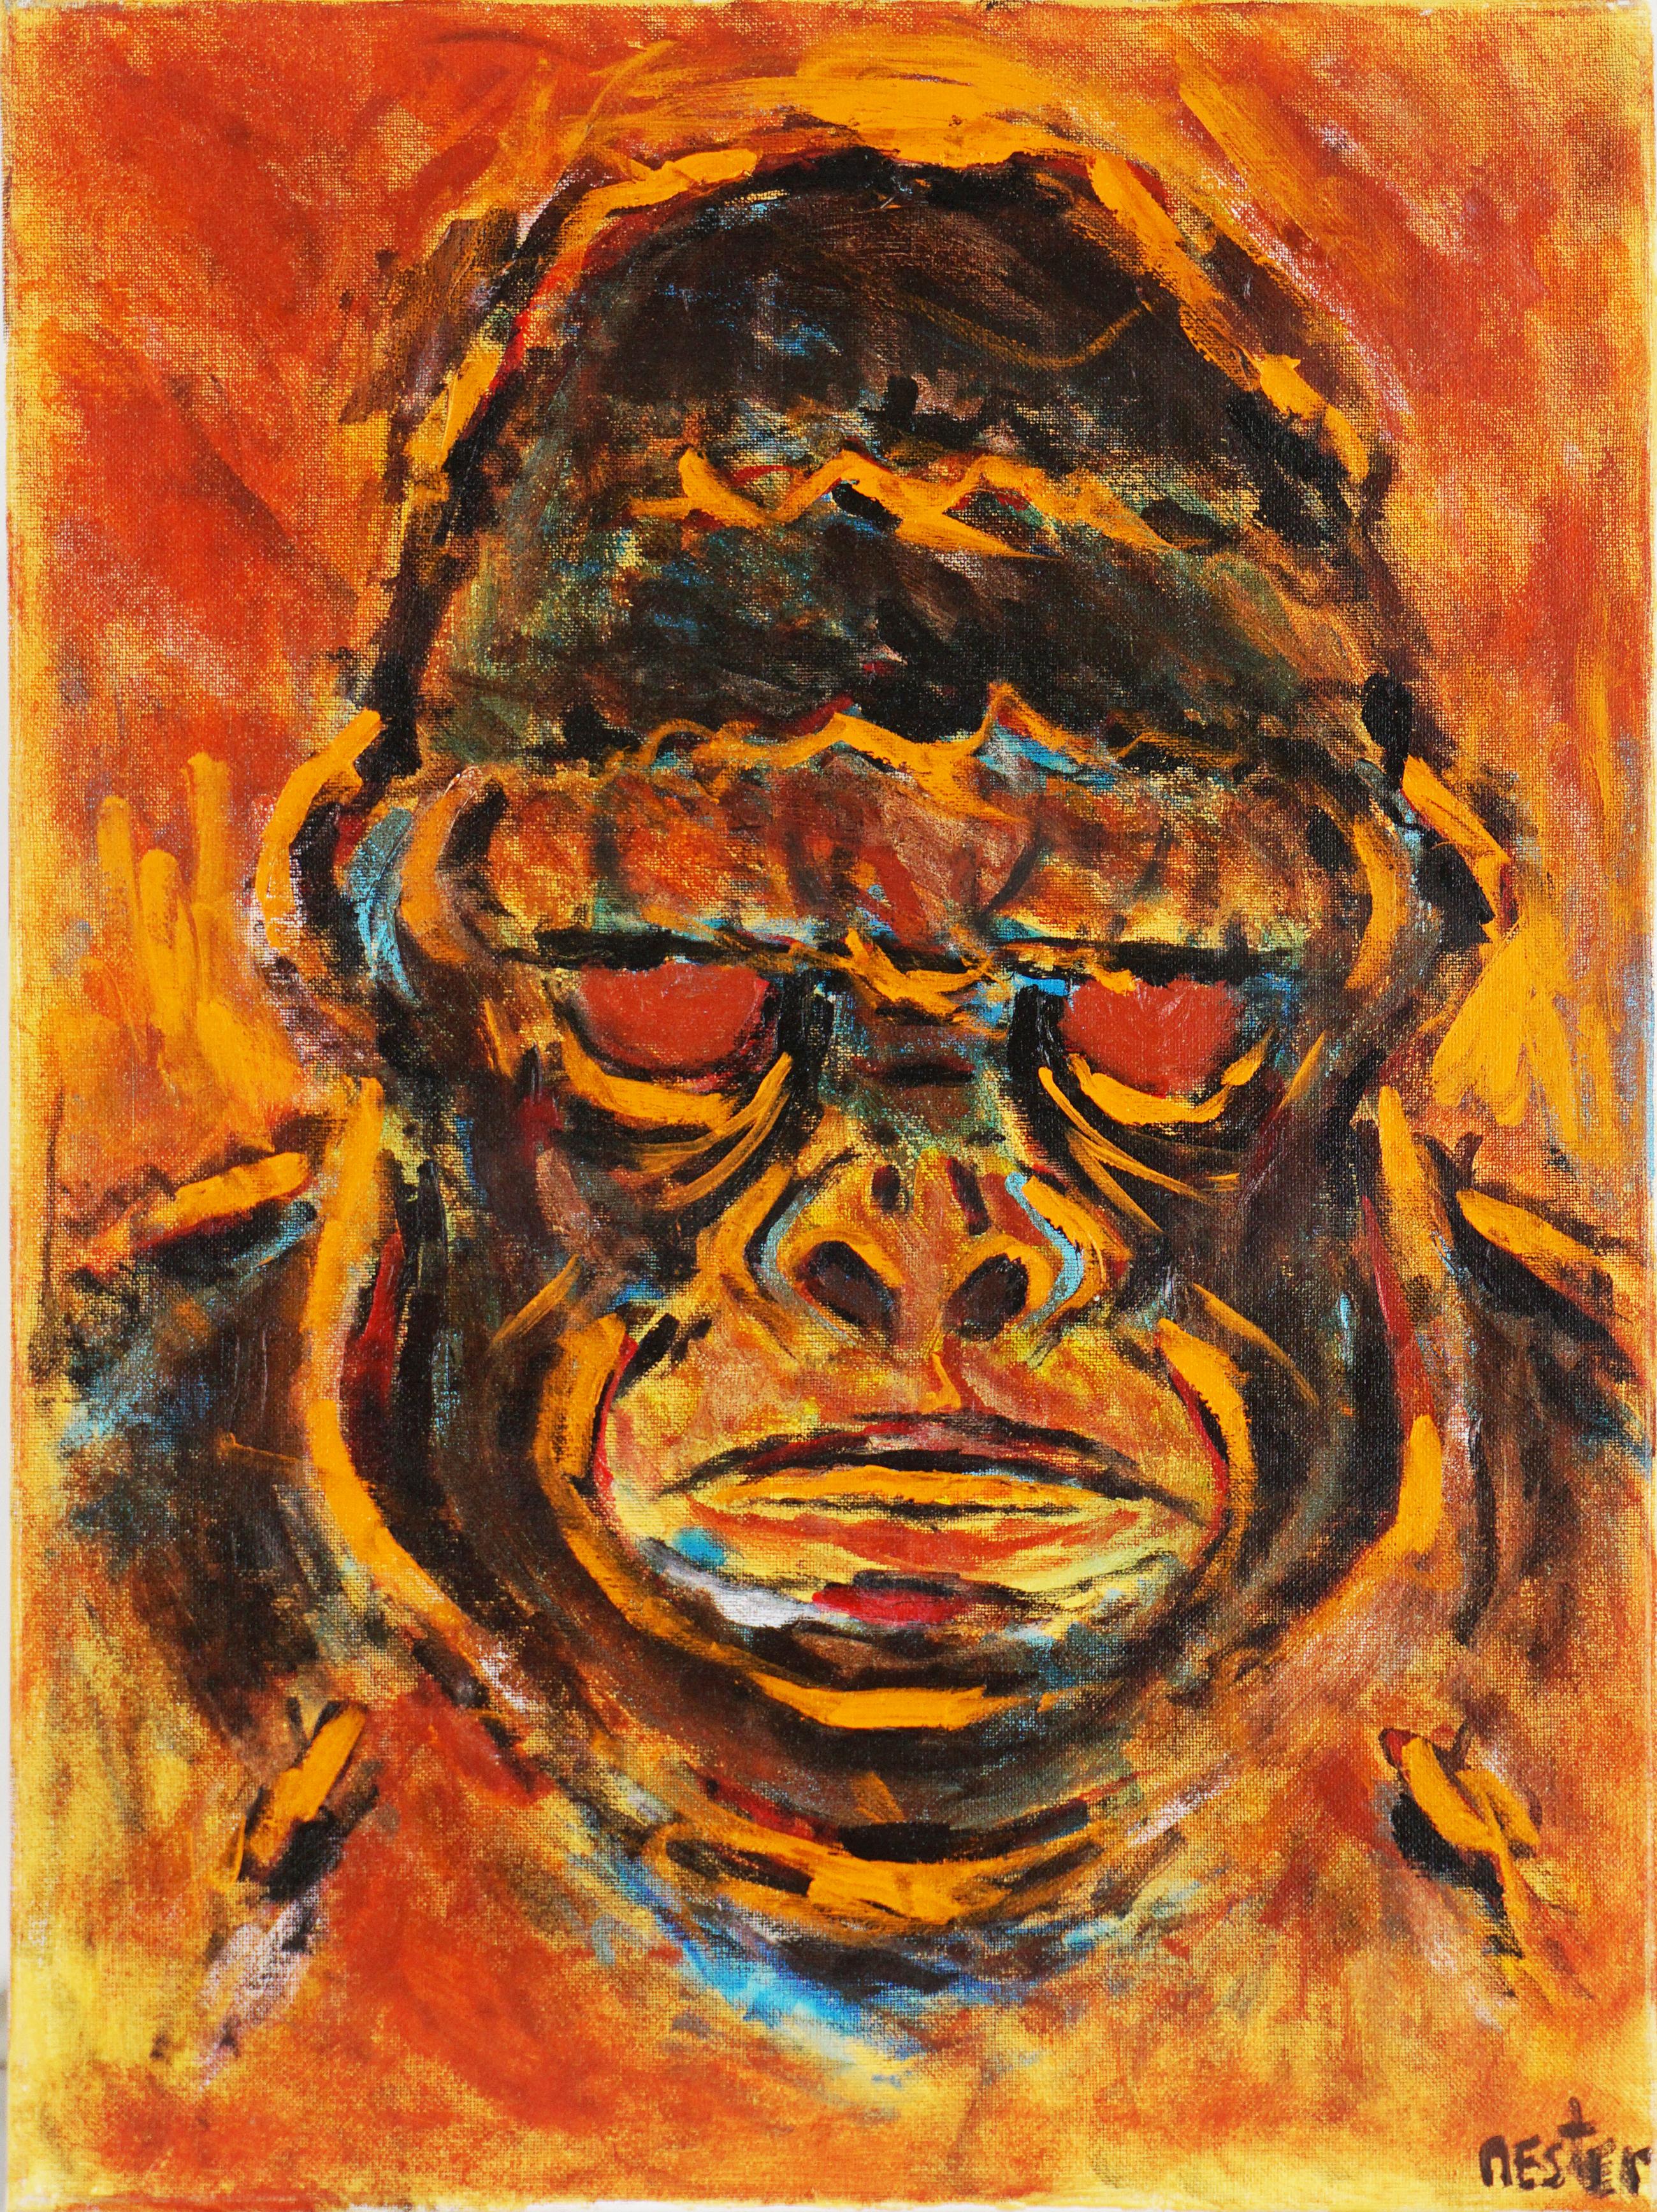 Lowland Gorilla des fauvistischen, abstrakten Expressionismus